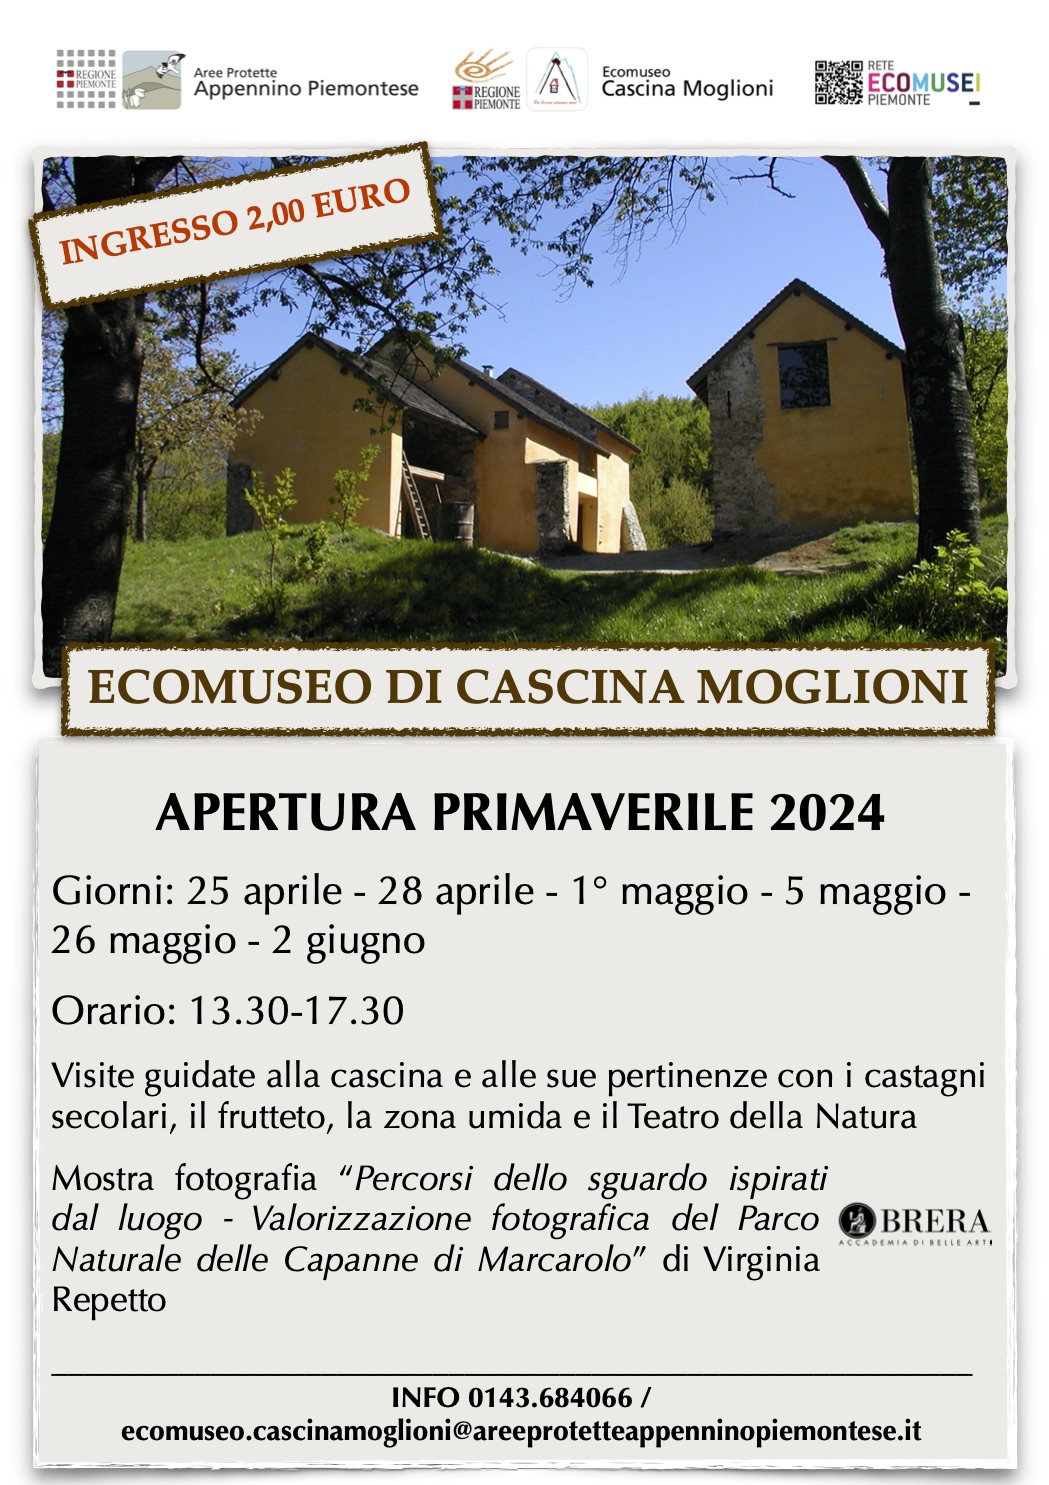 ECOMUSEO DI CASCINA MOGLIONI - APERTURA PRIMAVERILE 2024